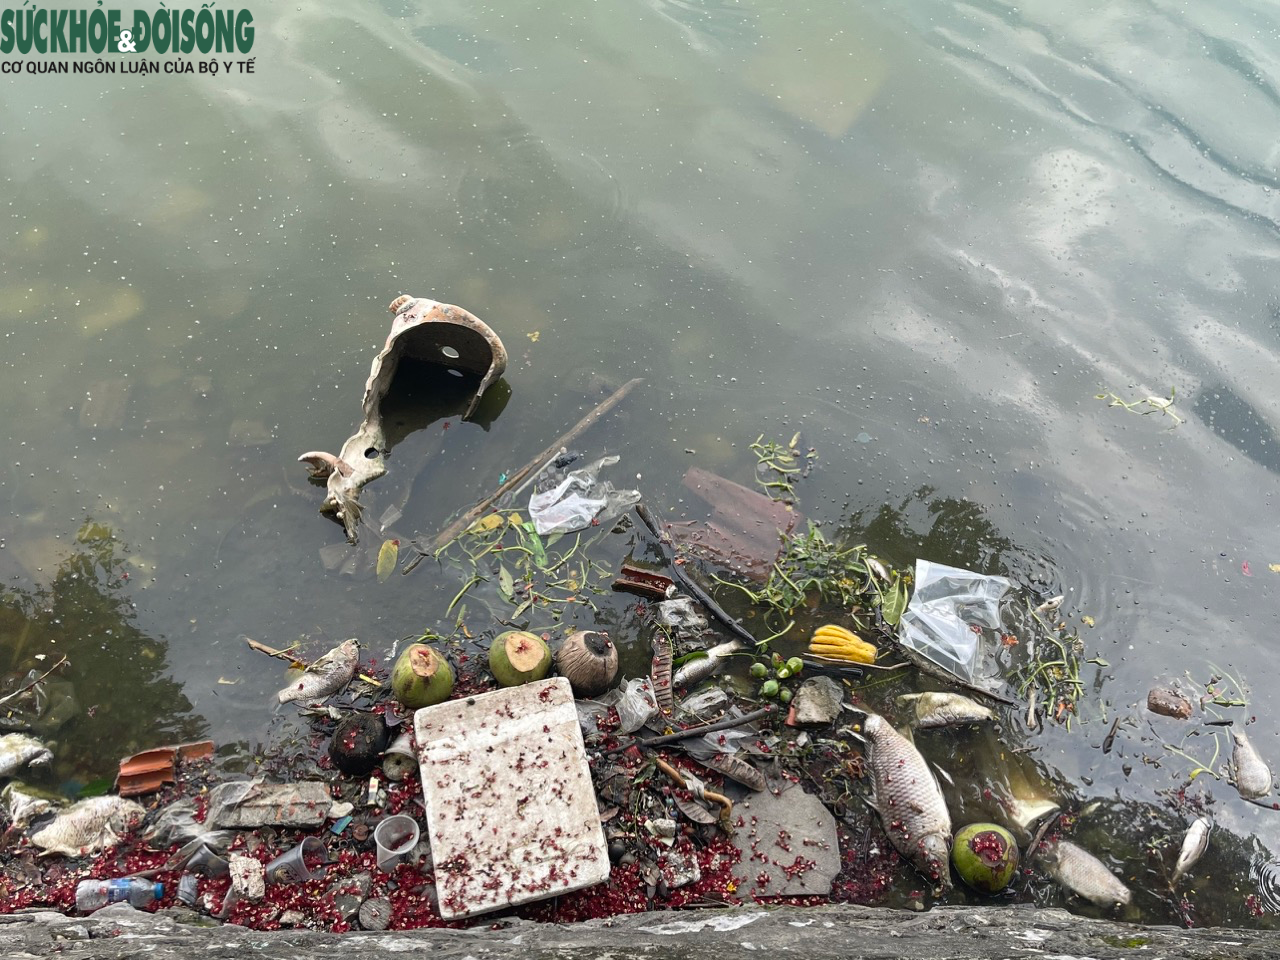 Xác cá chết, rác thải bốc mùi hôi thối một góc Hồ Tây - Ảnh 4.